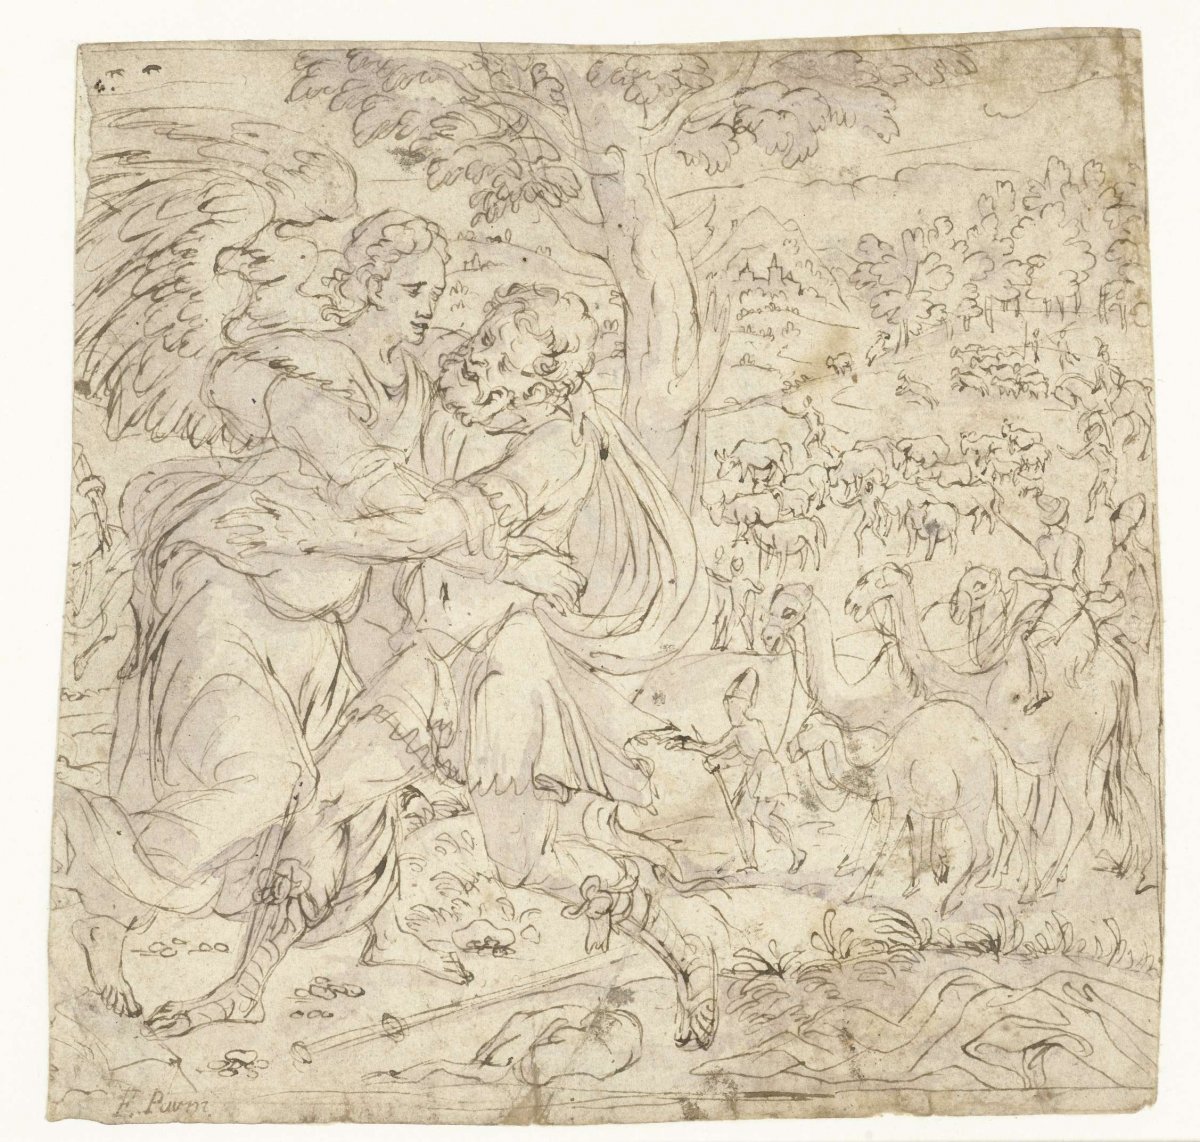 Jacob wrestles with the angel, Meester van de Lucas-Maanden, 1540 - 1571